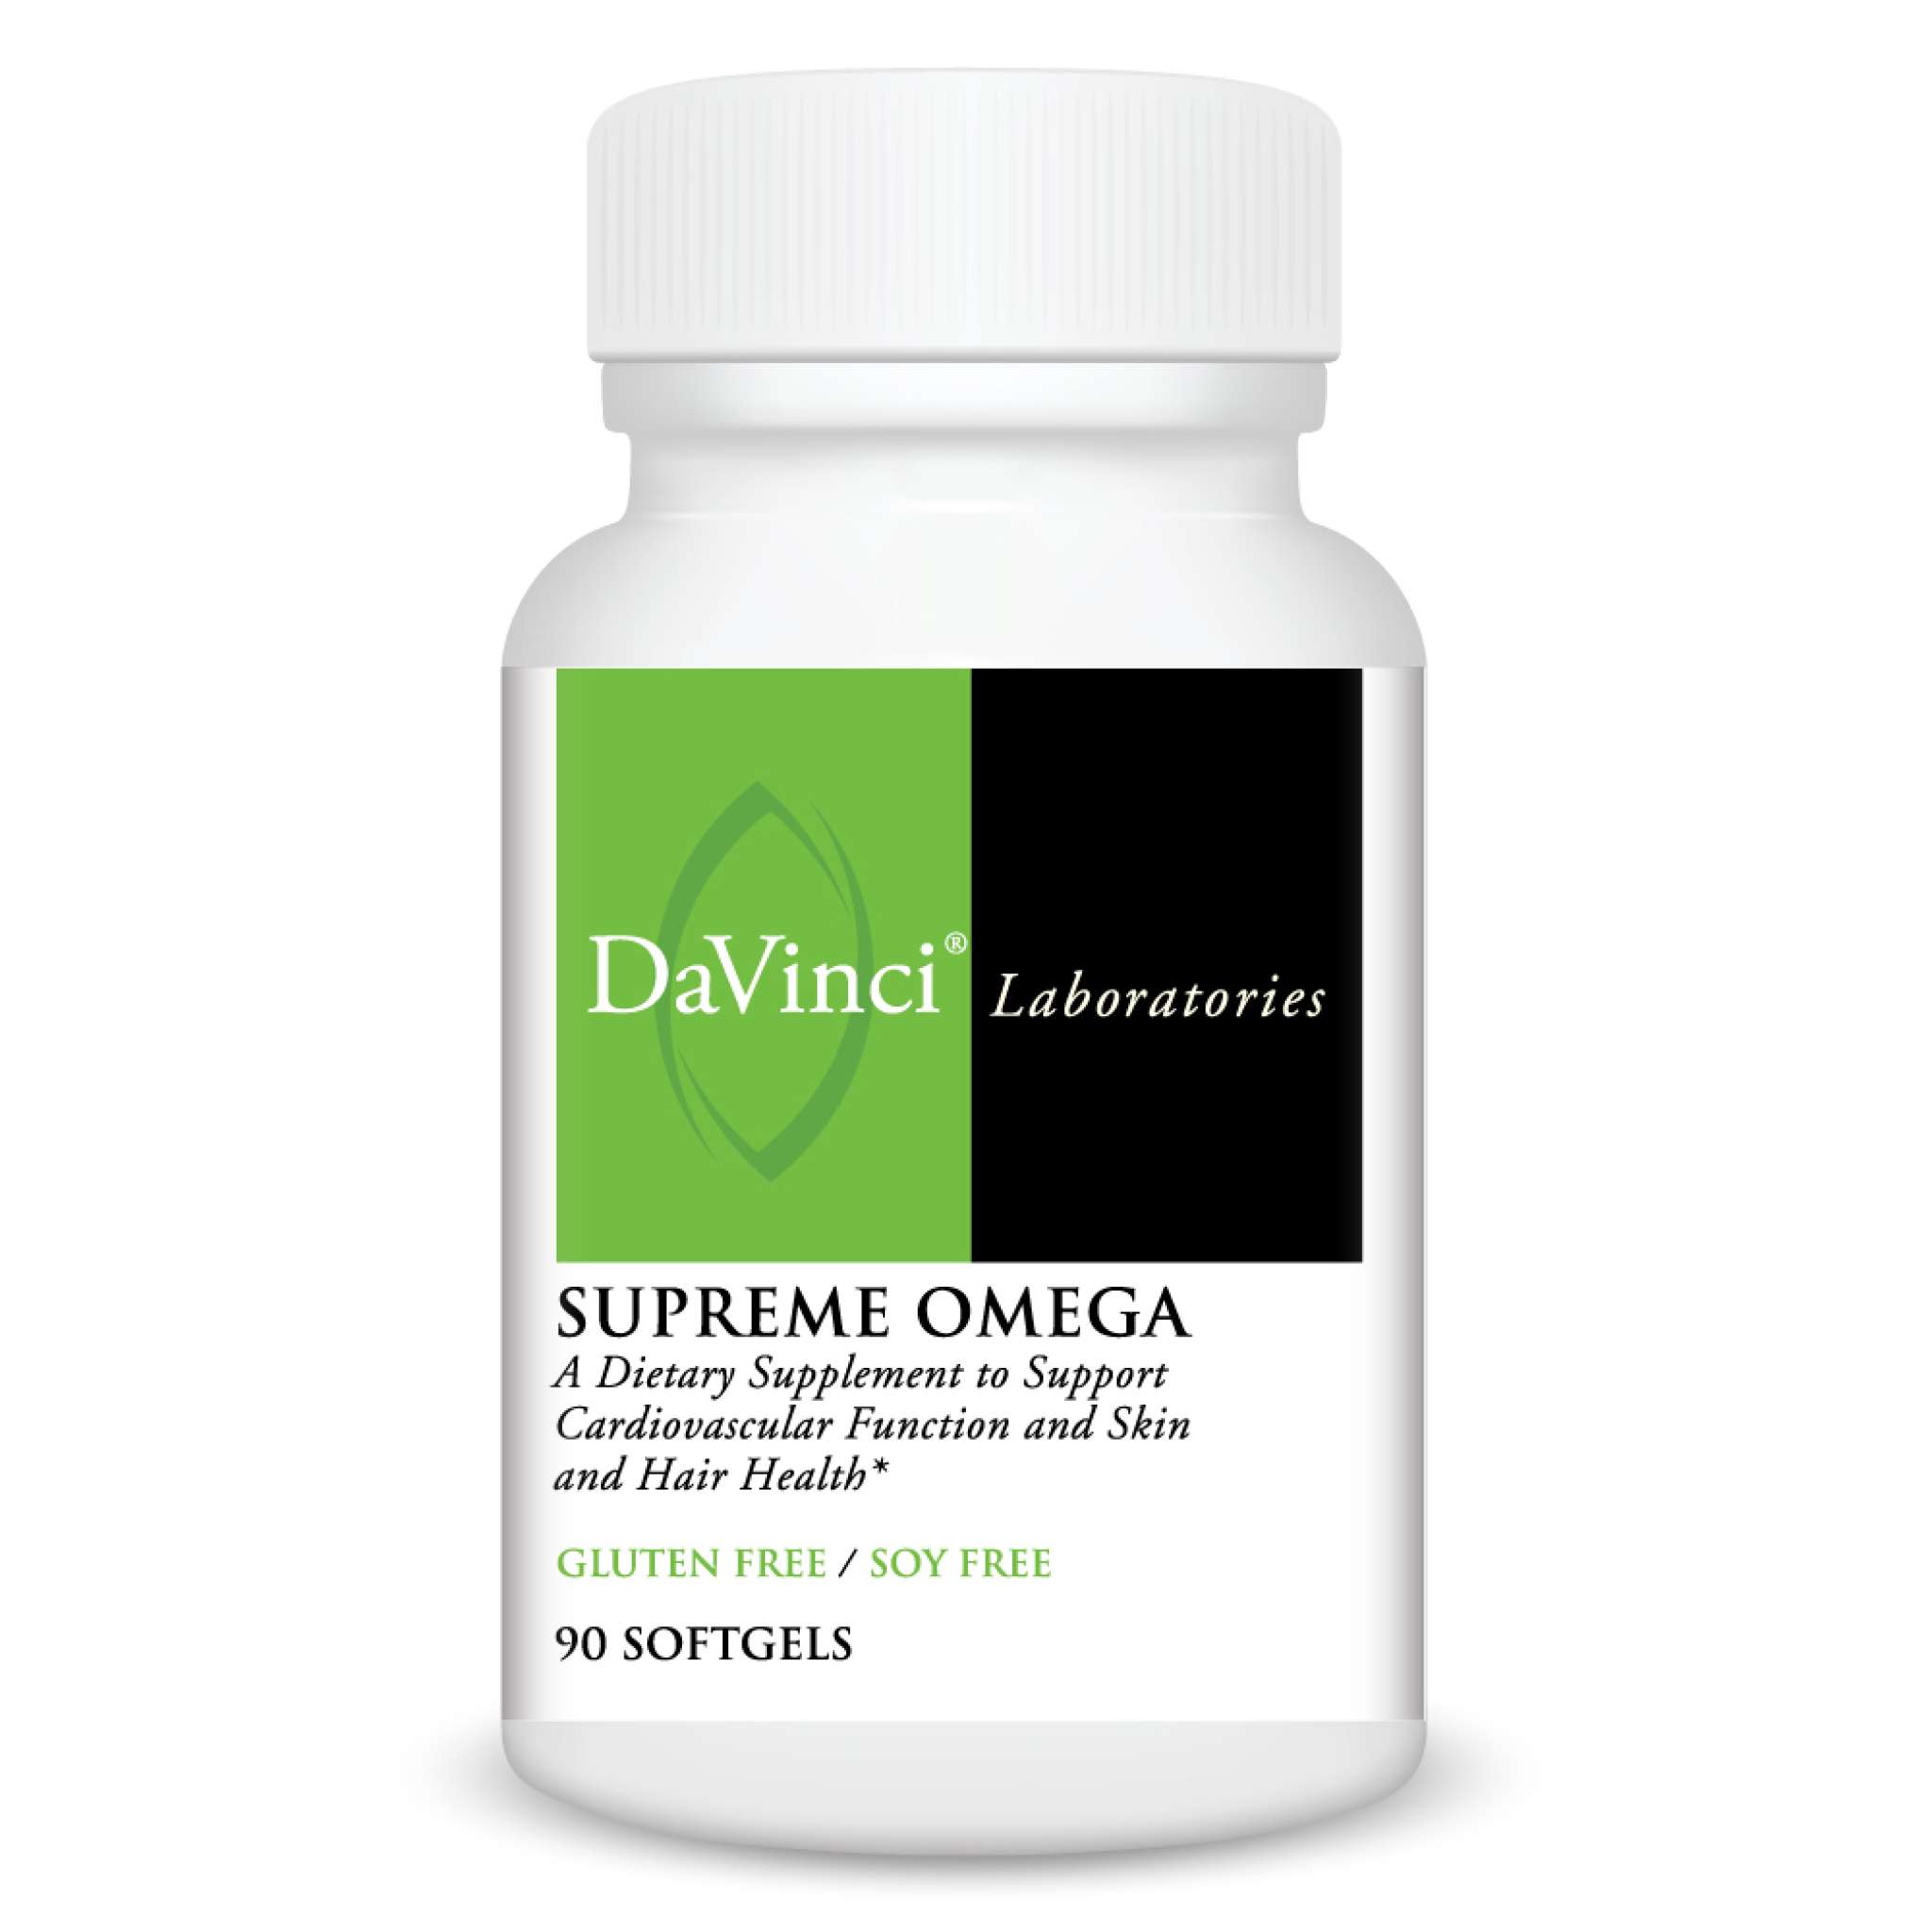 Davinci Laboratories - Omega 3 Supreme